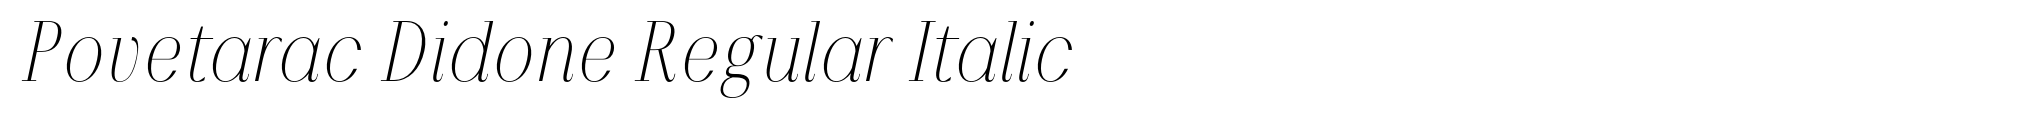 Povetarac Didone Regular Italic image